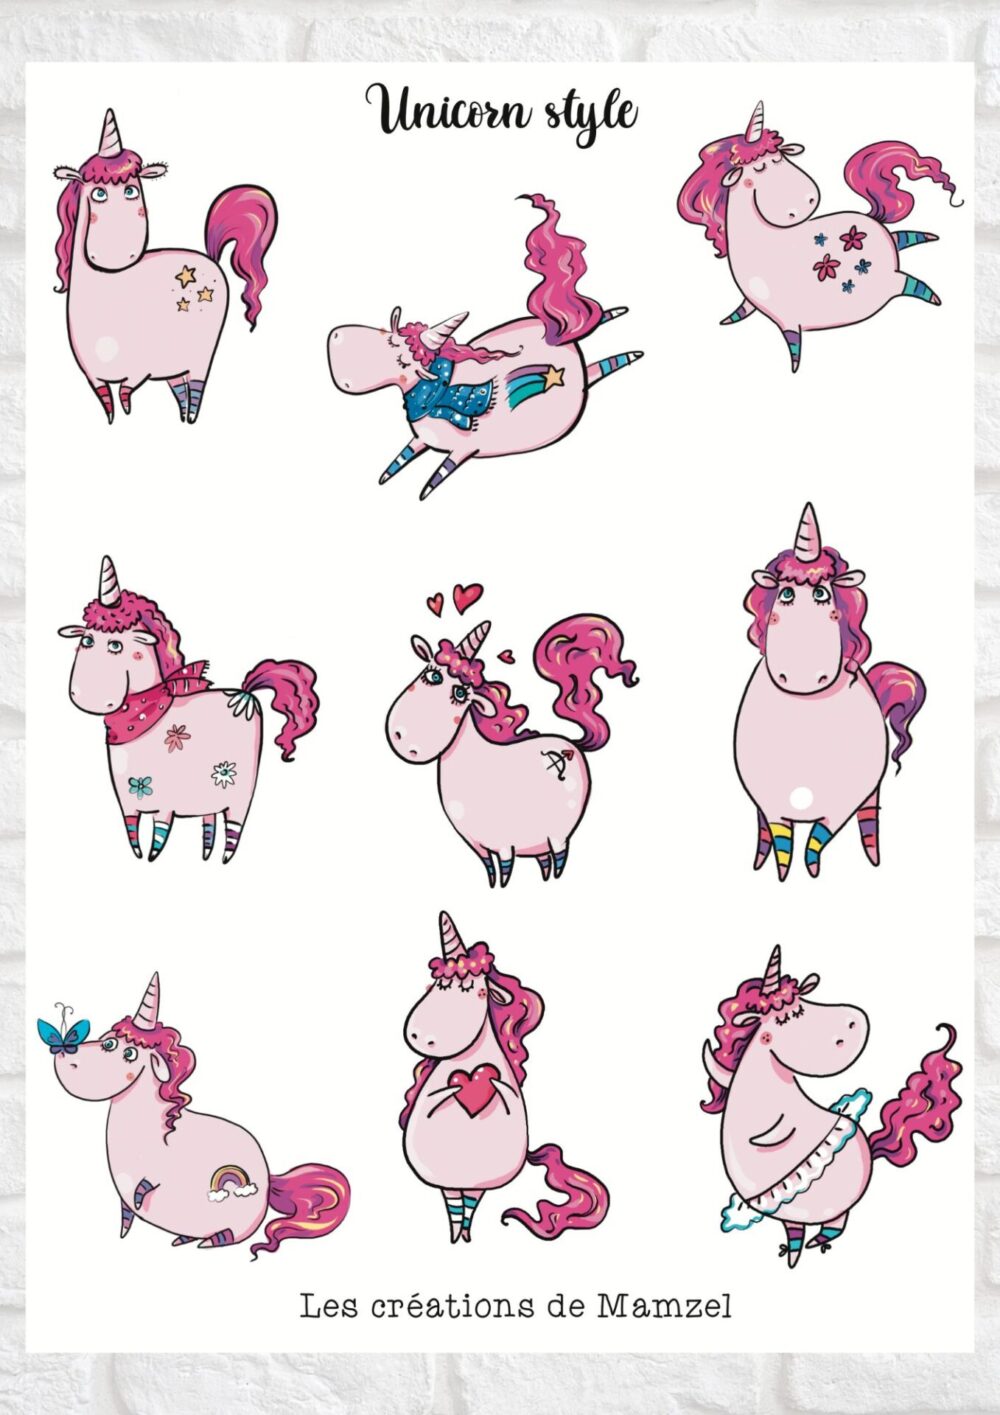 Vente planche de stickers pour enfants / ados - Boutique en ligne - Création française - Unicorn style